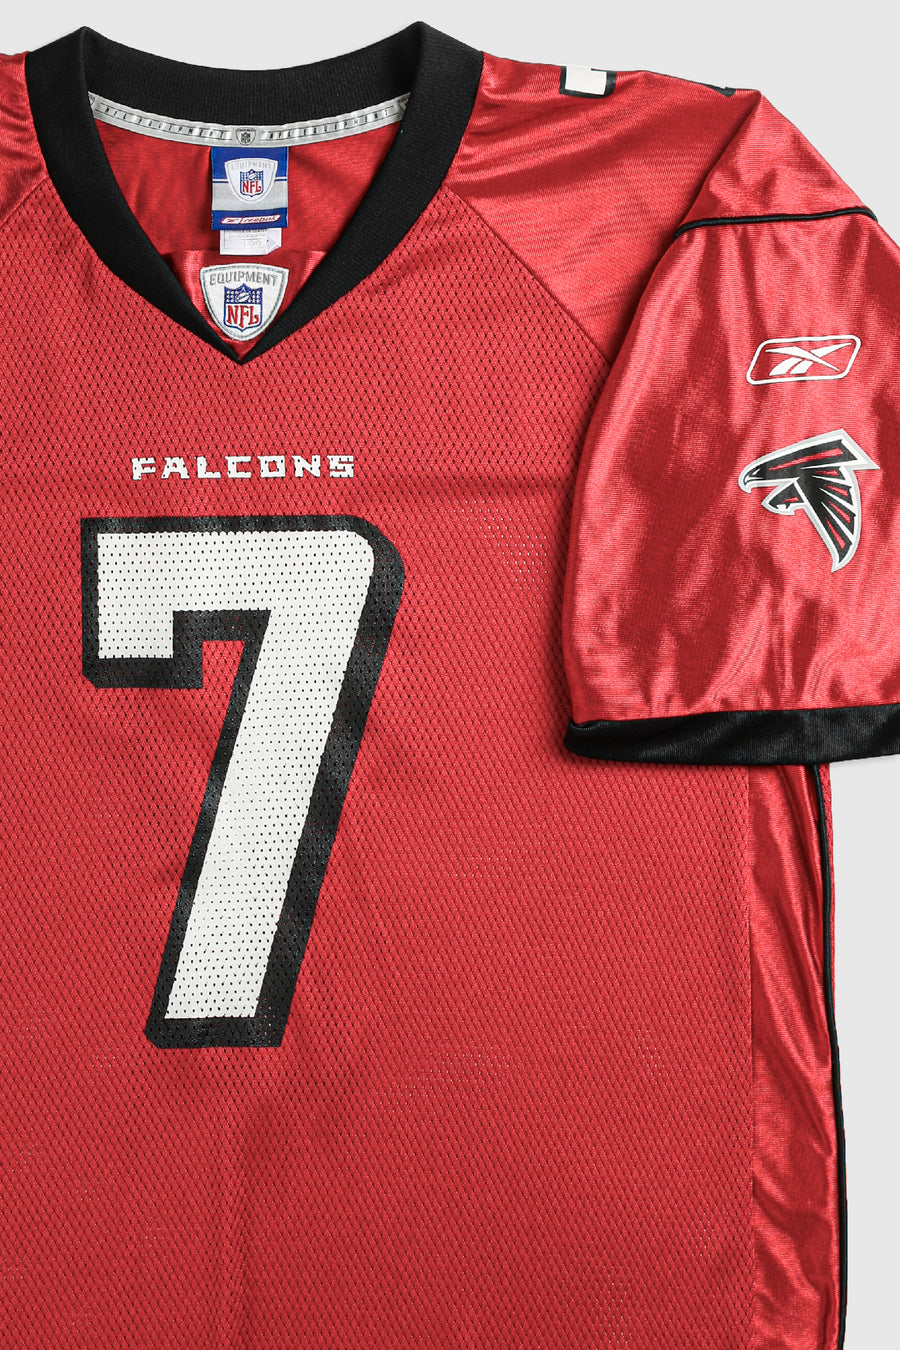 Vintage Falcons NFL Jersey - L